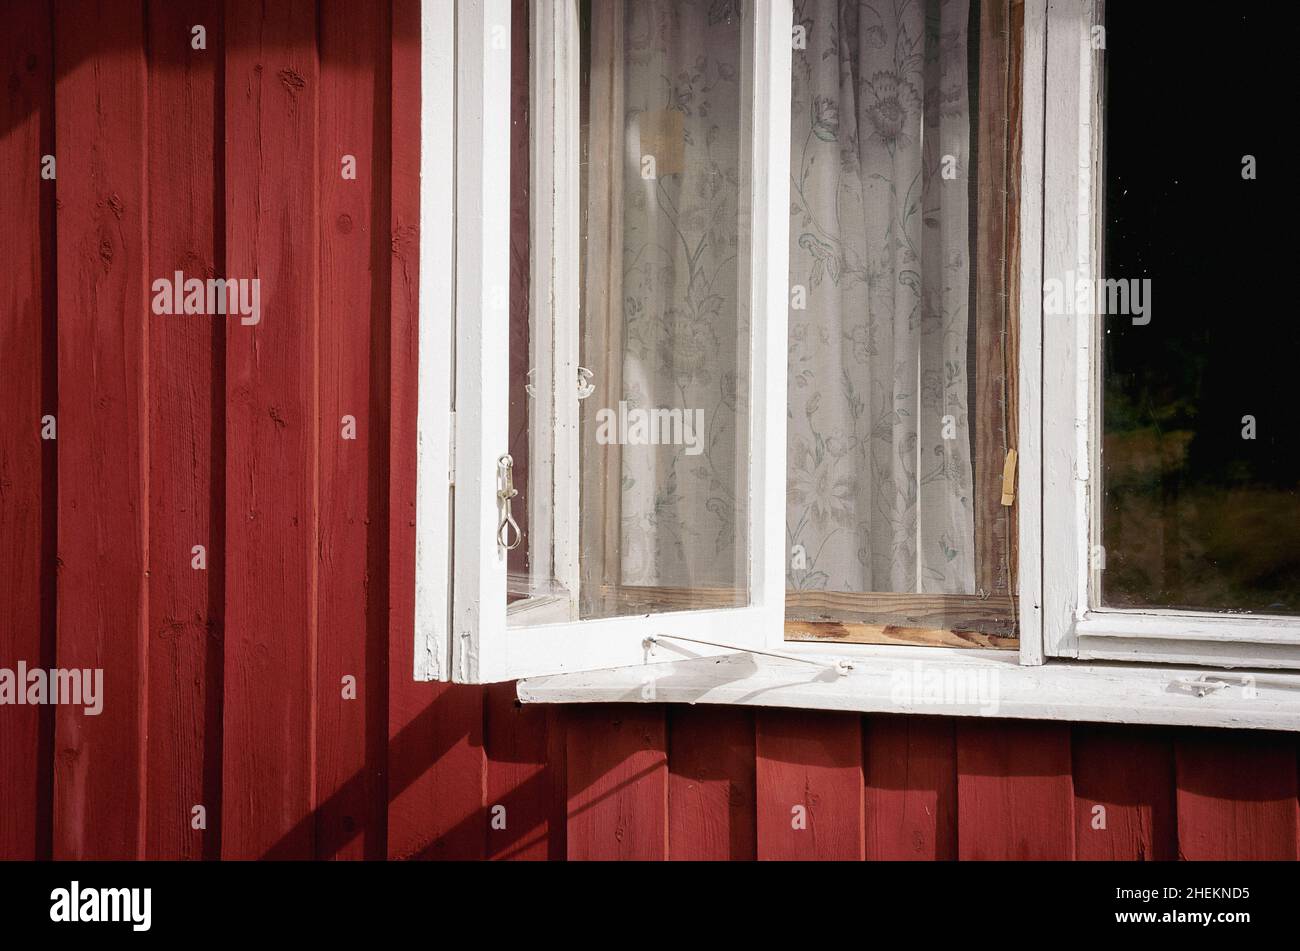 Immagine simbolica: Finestra dettaglio di una casa in legno nello stile di una tipica capanna in legno svedese. Foto Stock